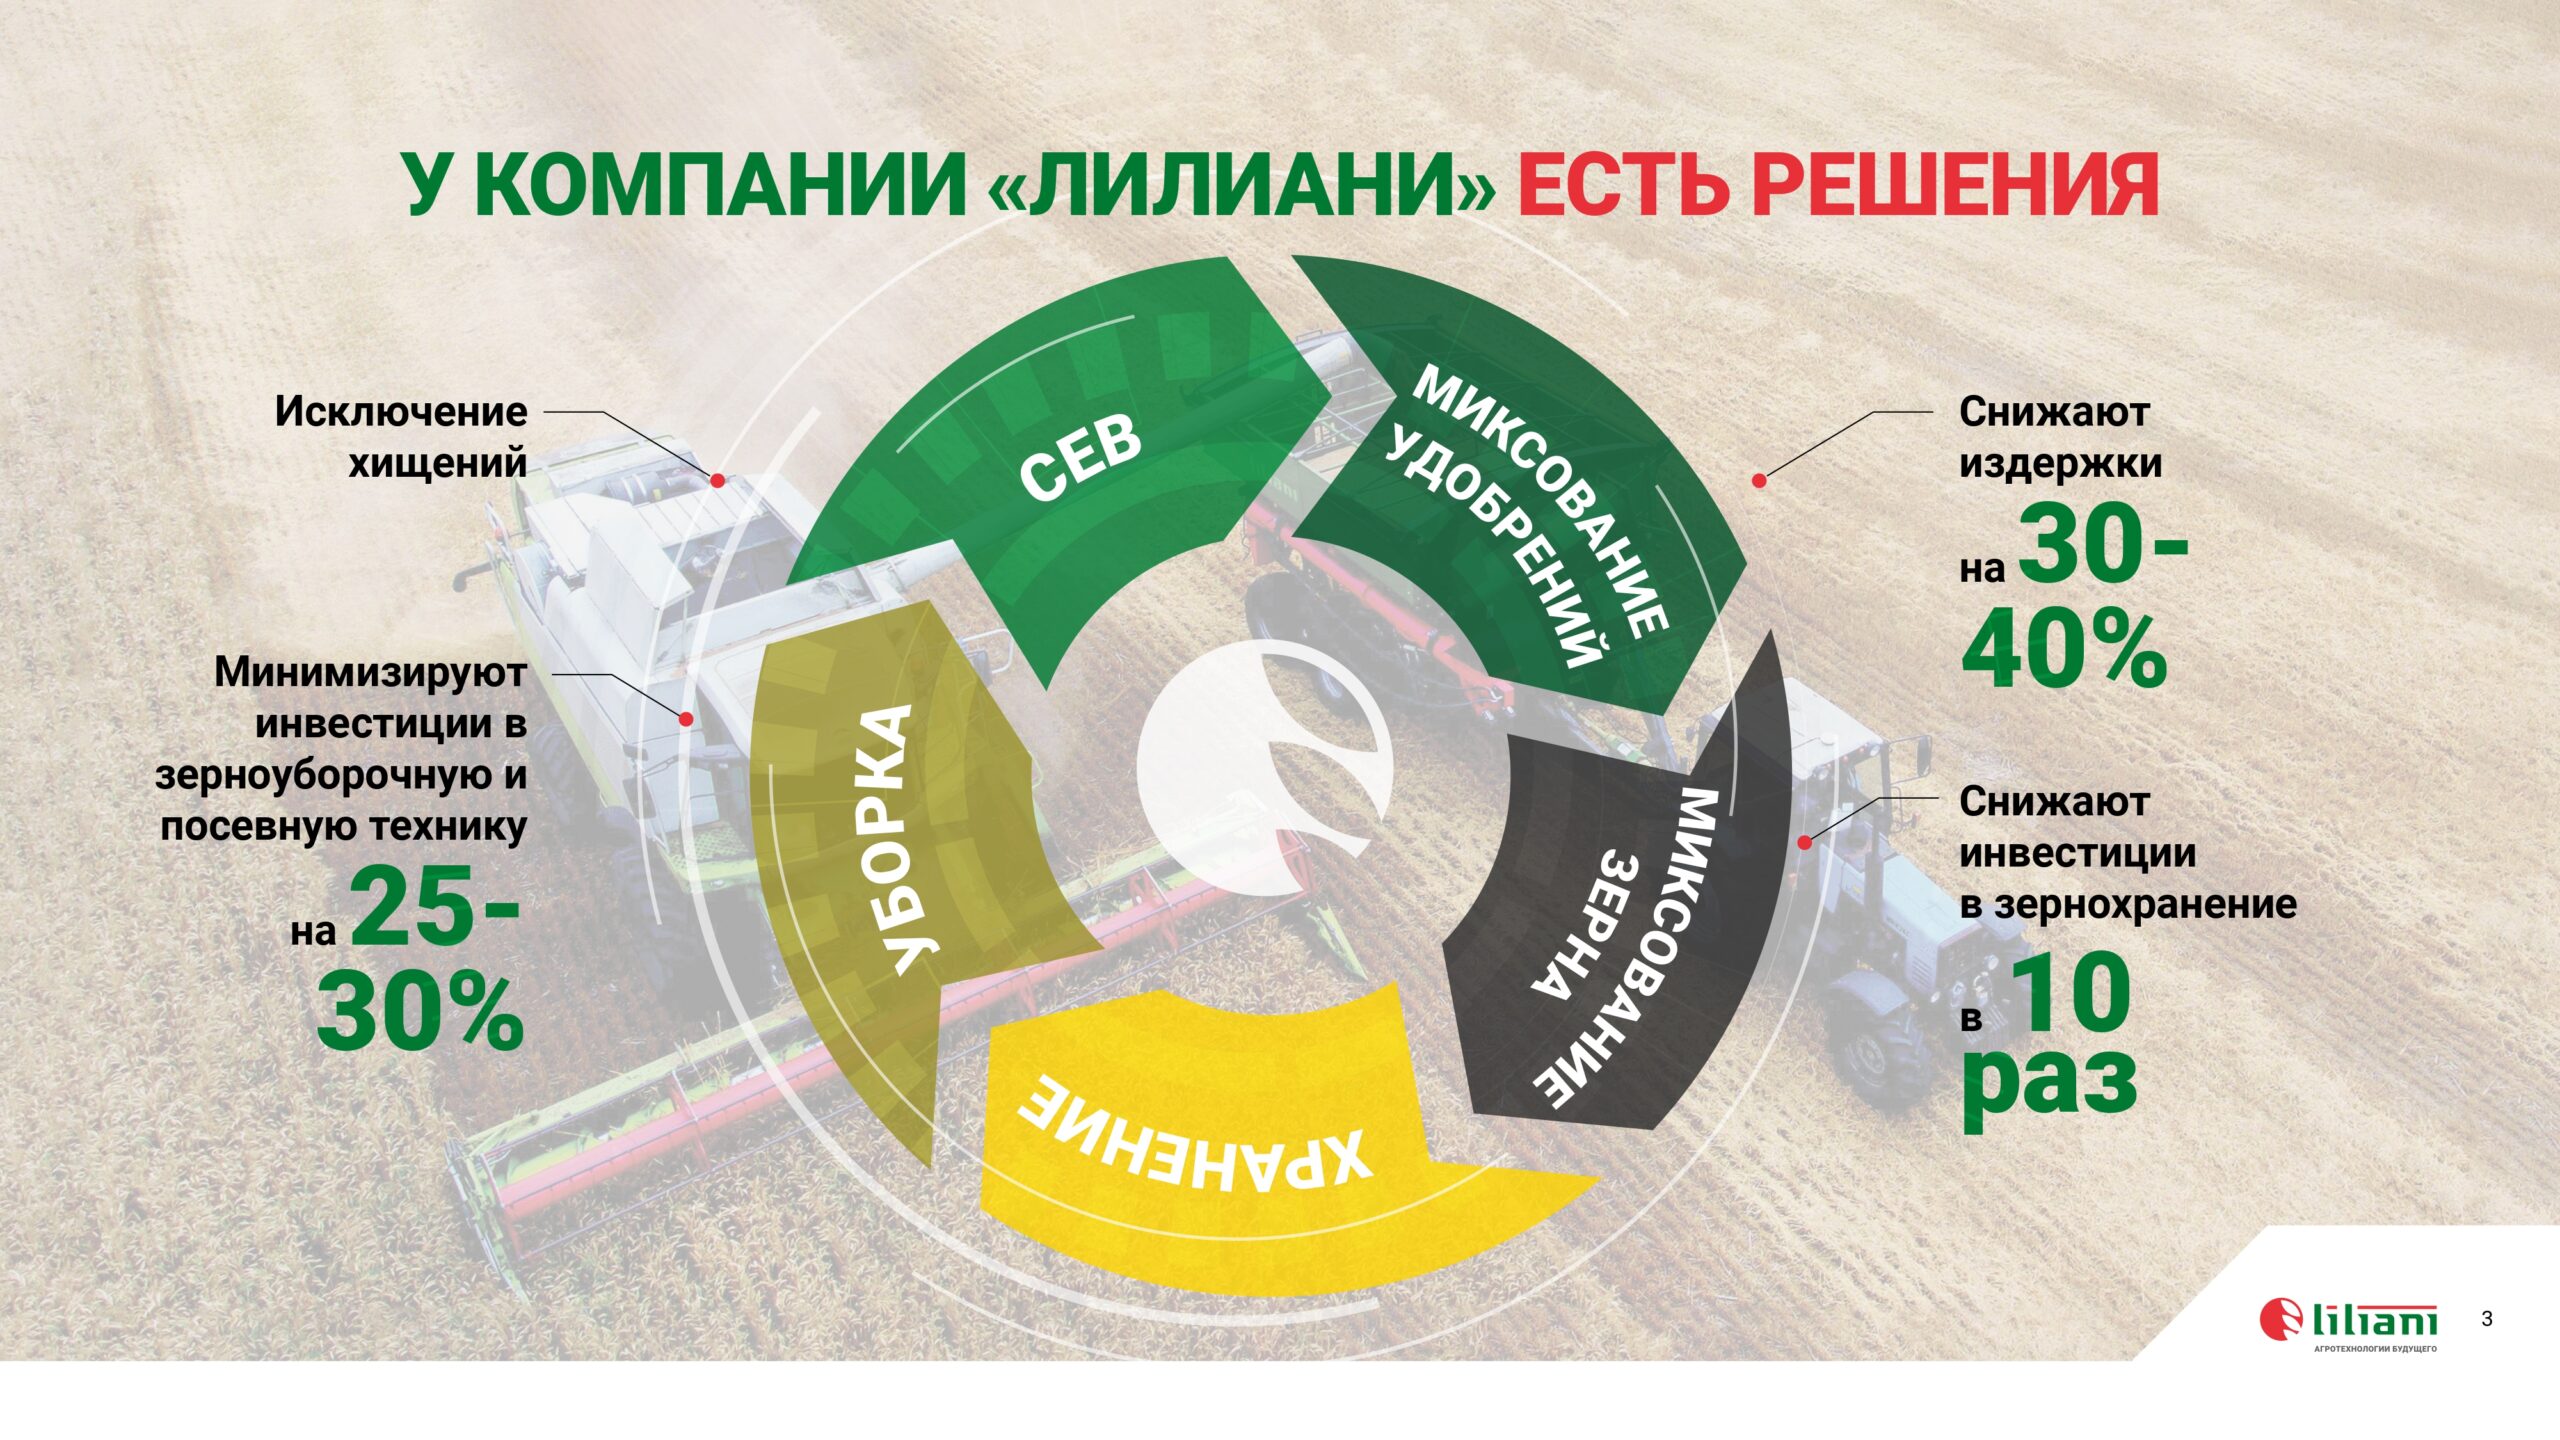 Презентация применения IT технологий в сельском хозяйстве слайд 3